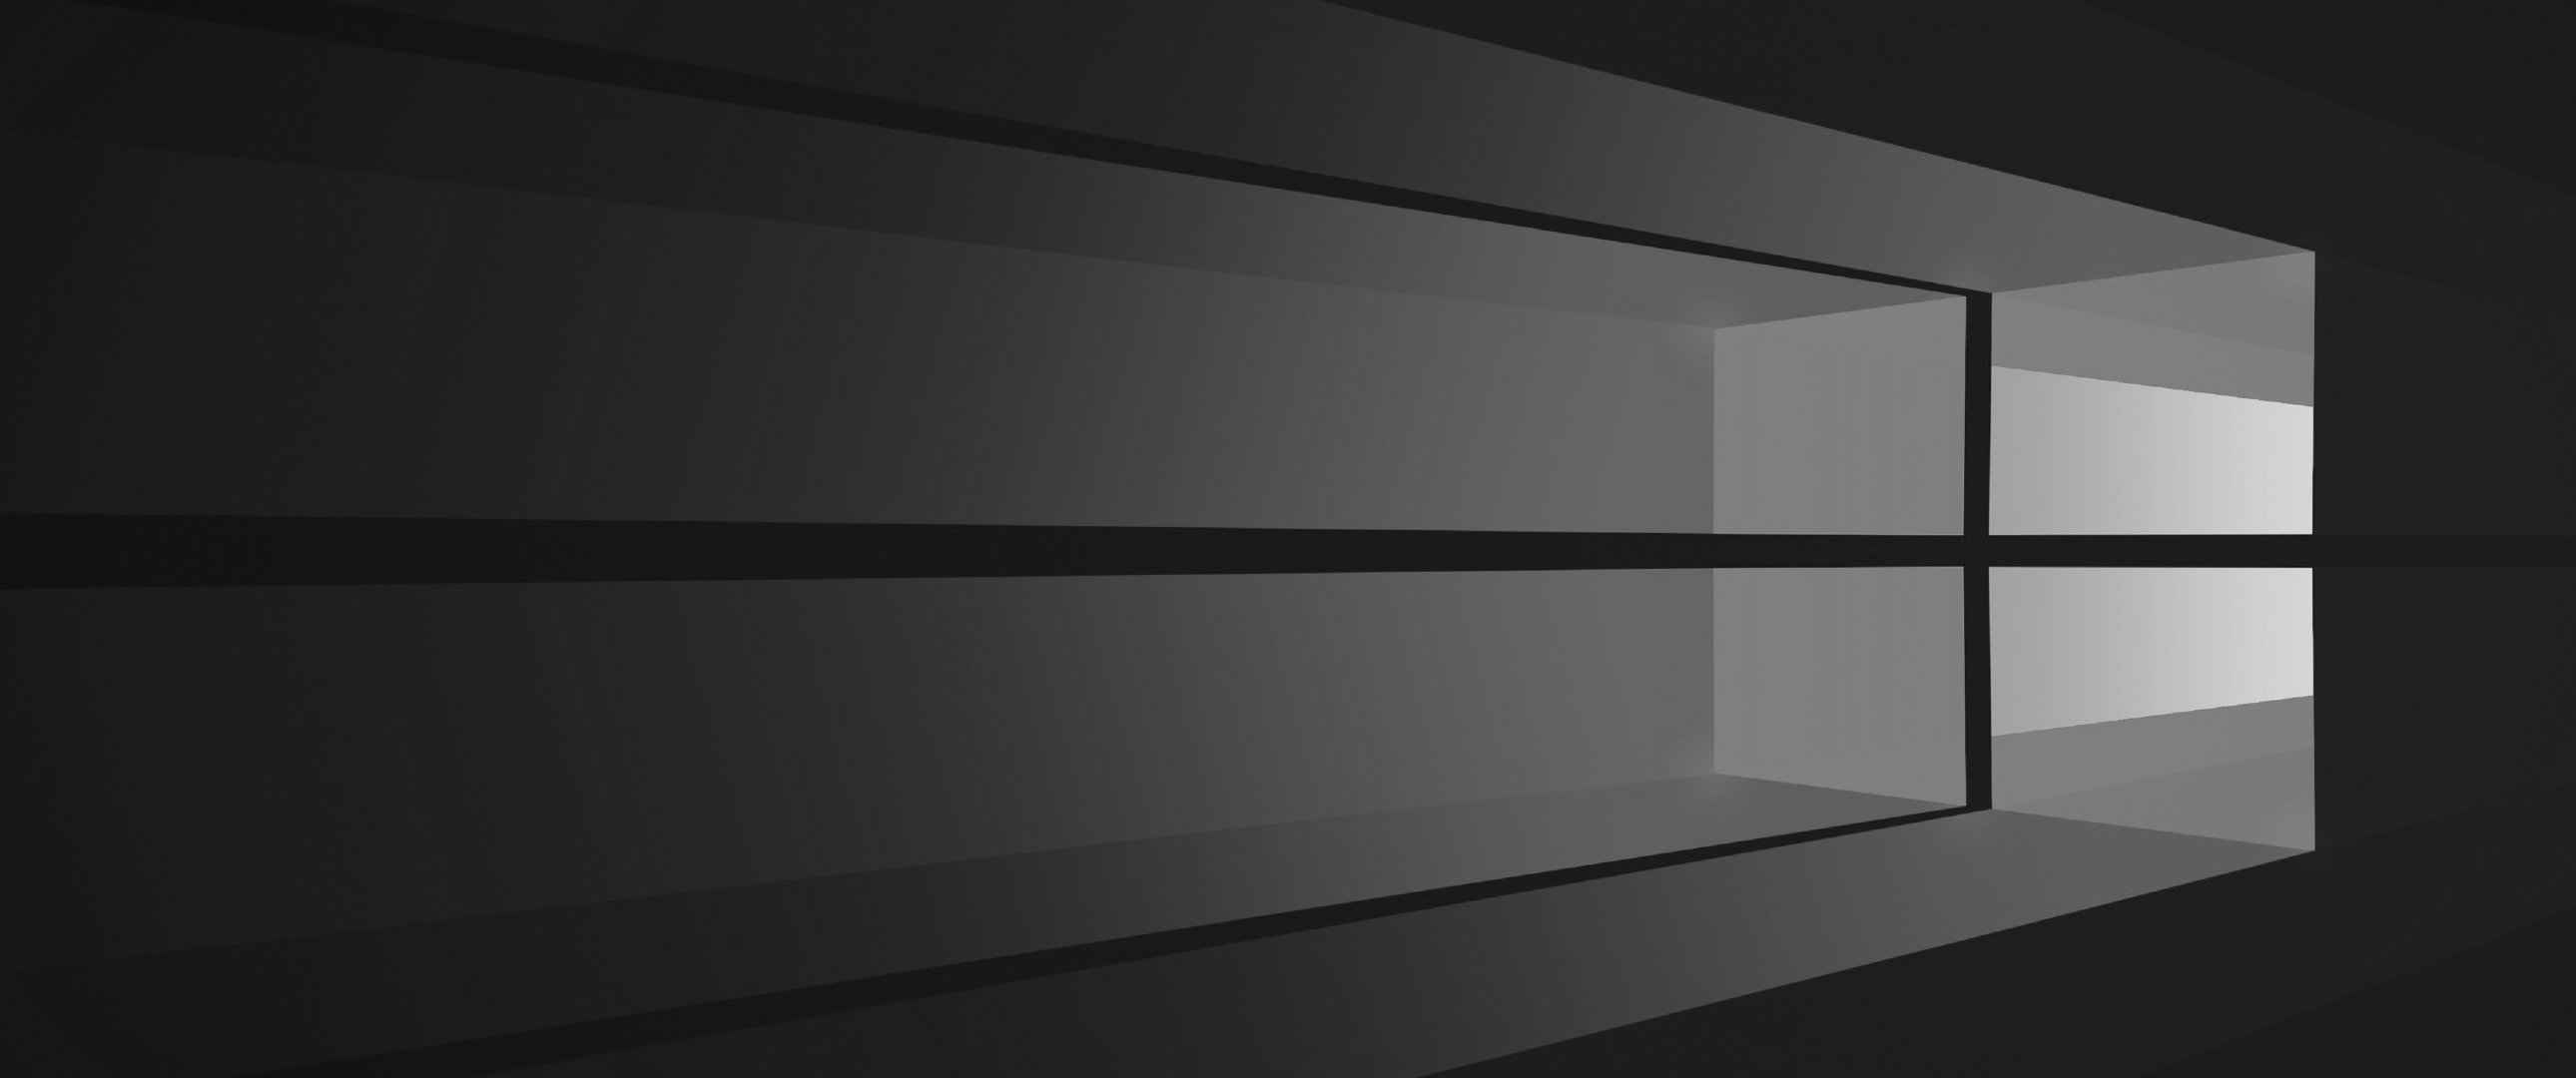 Windows 10黑色窗口壁纸-